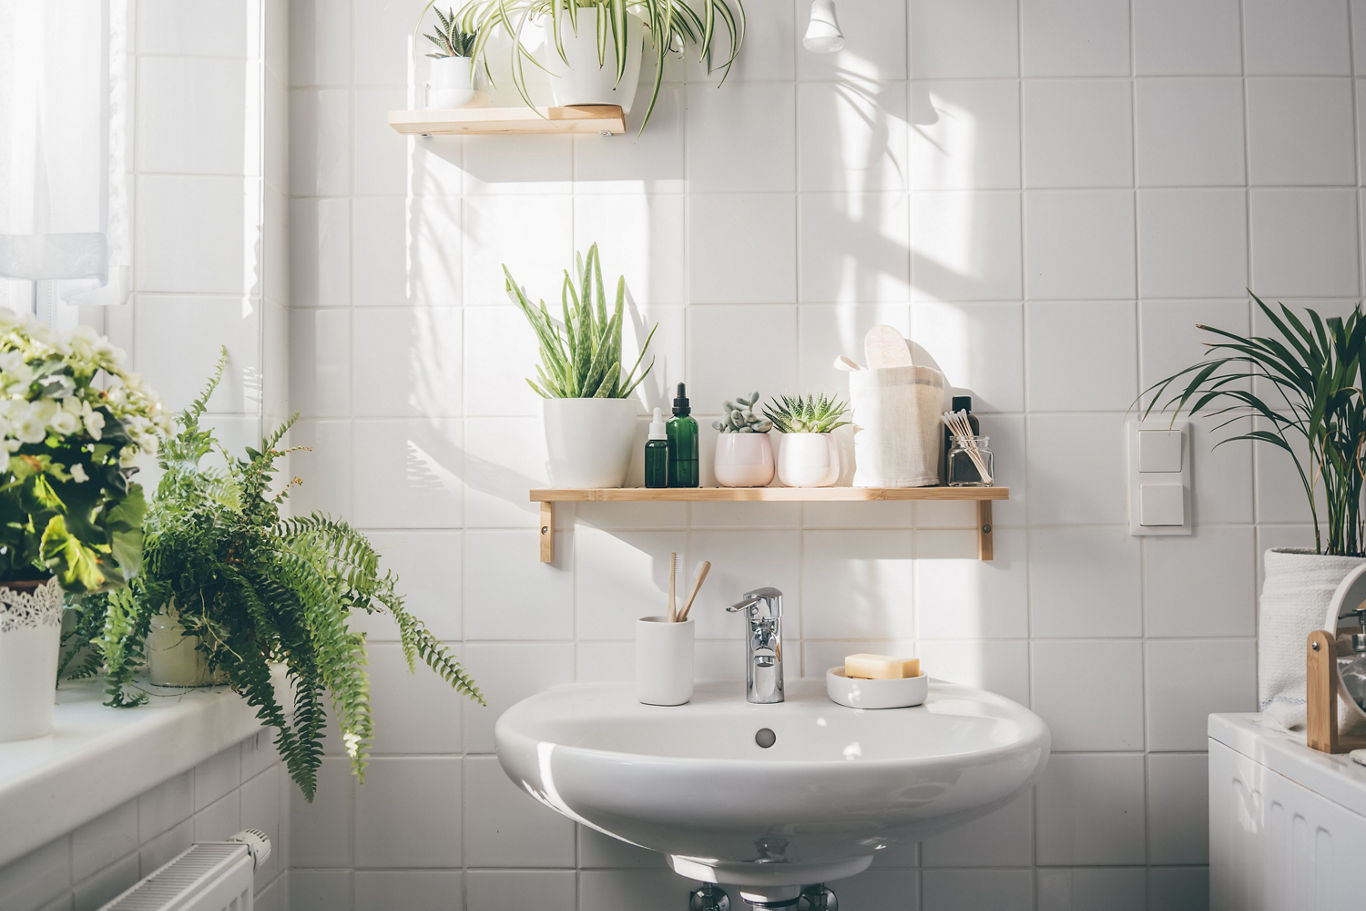 Bathroom with Plant Décor | Blog | Greystar 